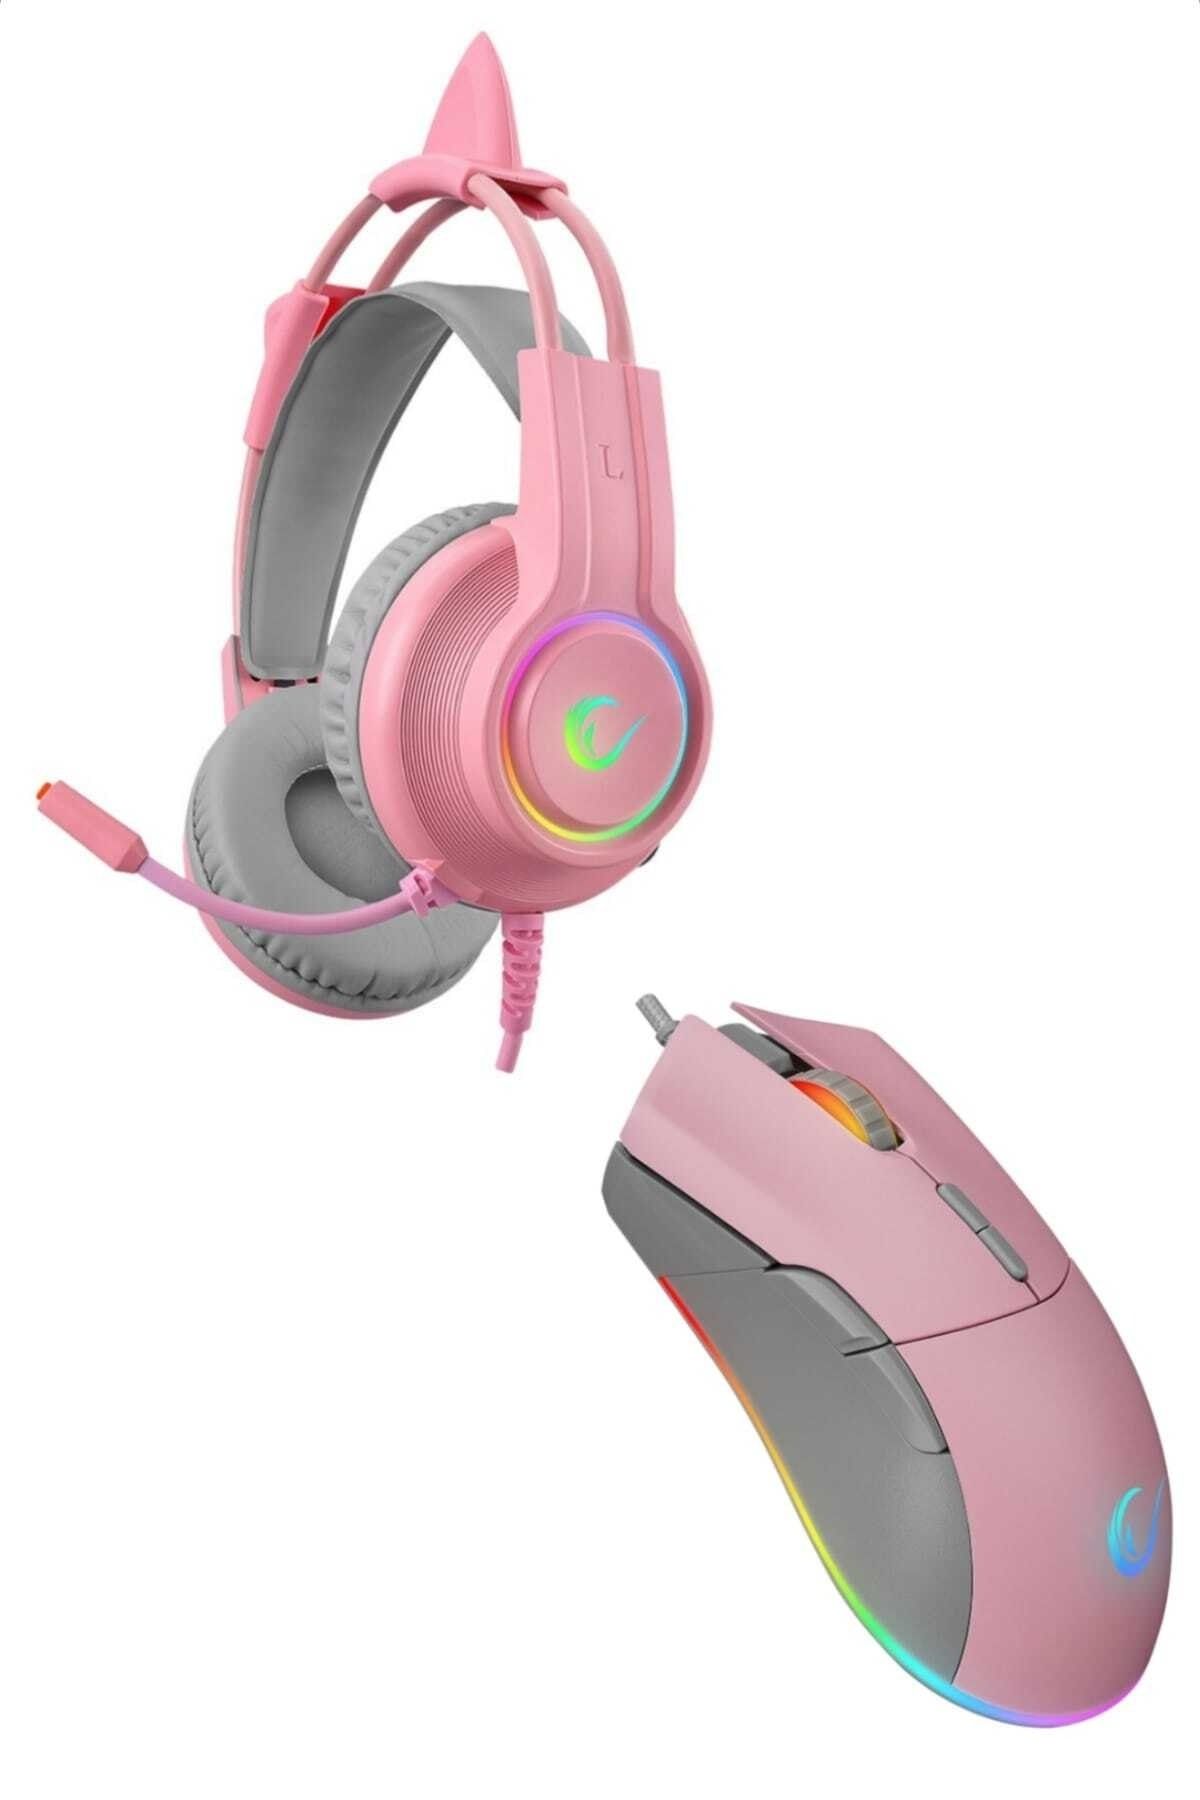 Rampage X-pink Girl Pembe Gaming Oyuncu Seti (X-CATTY PEMBE 7.1 RGB OYUNCU KULAKLIK SPEAR RGB 7200DPI MOUSE)